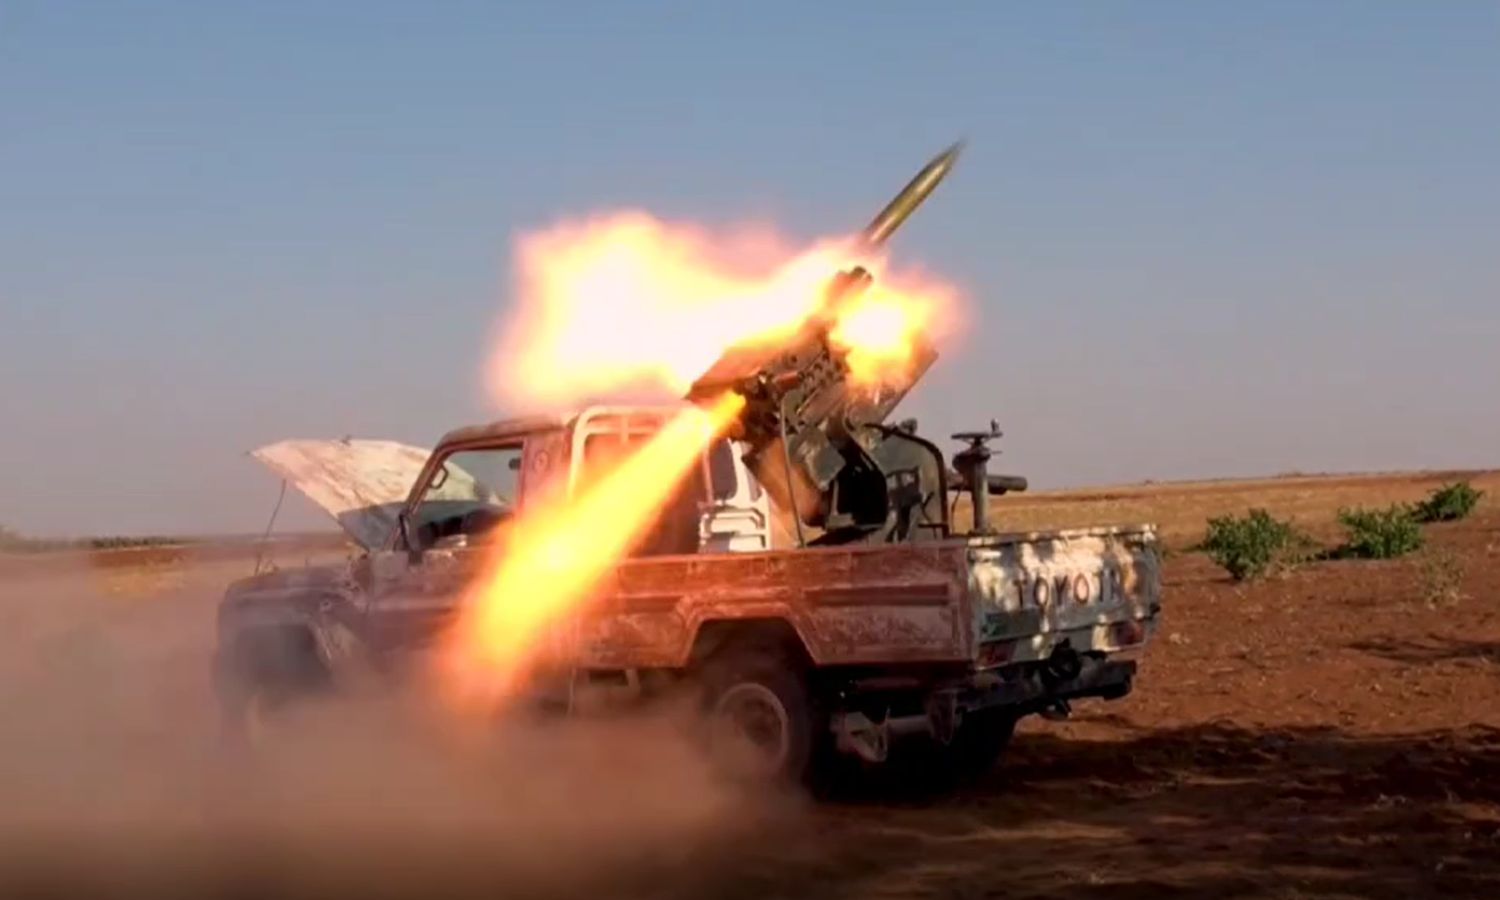 سيارة لوحدات "المدفعية والصواريخ" في "الجيش الوطني" تستهدف مواقع مشتركة لقوات النظام و"قسد" بريف حلب- 19 من آب 2022 (وحدة الإعلام الحربي)